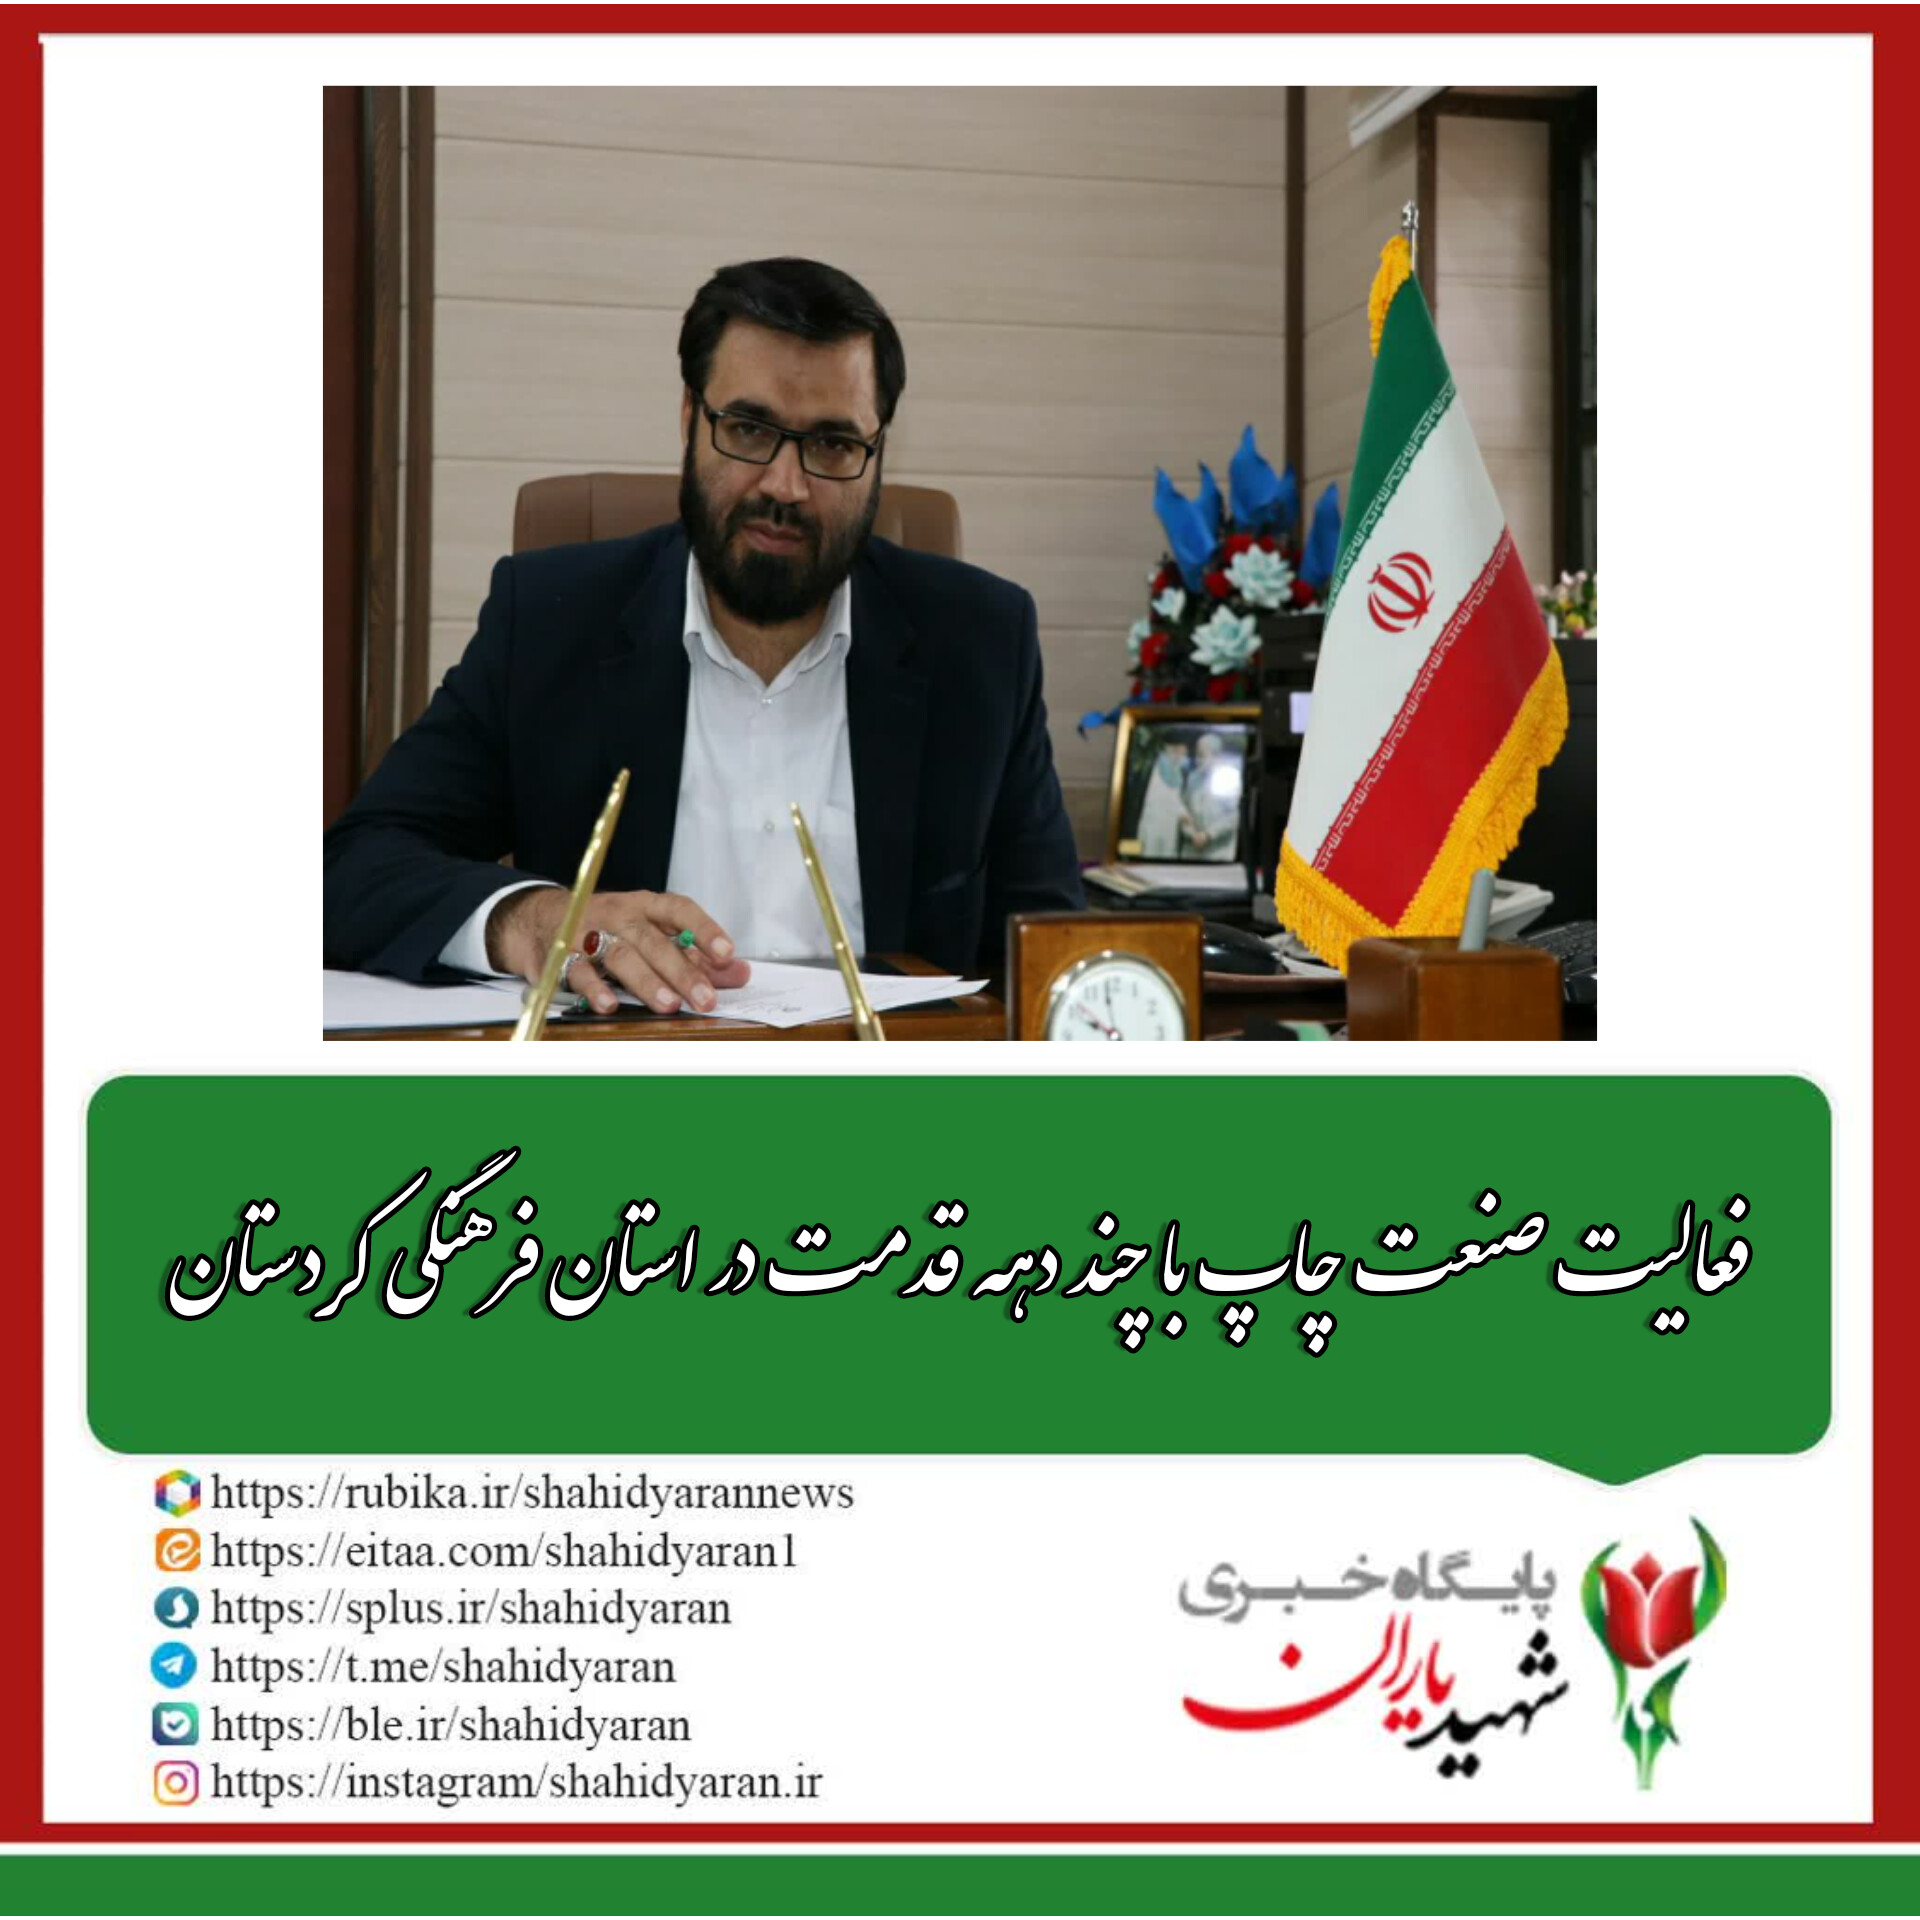 پیام مدیرکل فرهنگ و ارشاد اسلامی استان کردستان به مناسبت روز ملی صنعت چاپ: